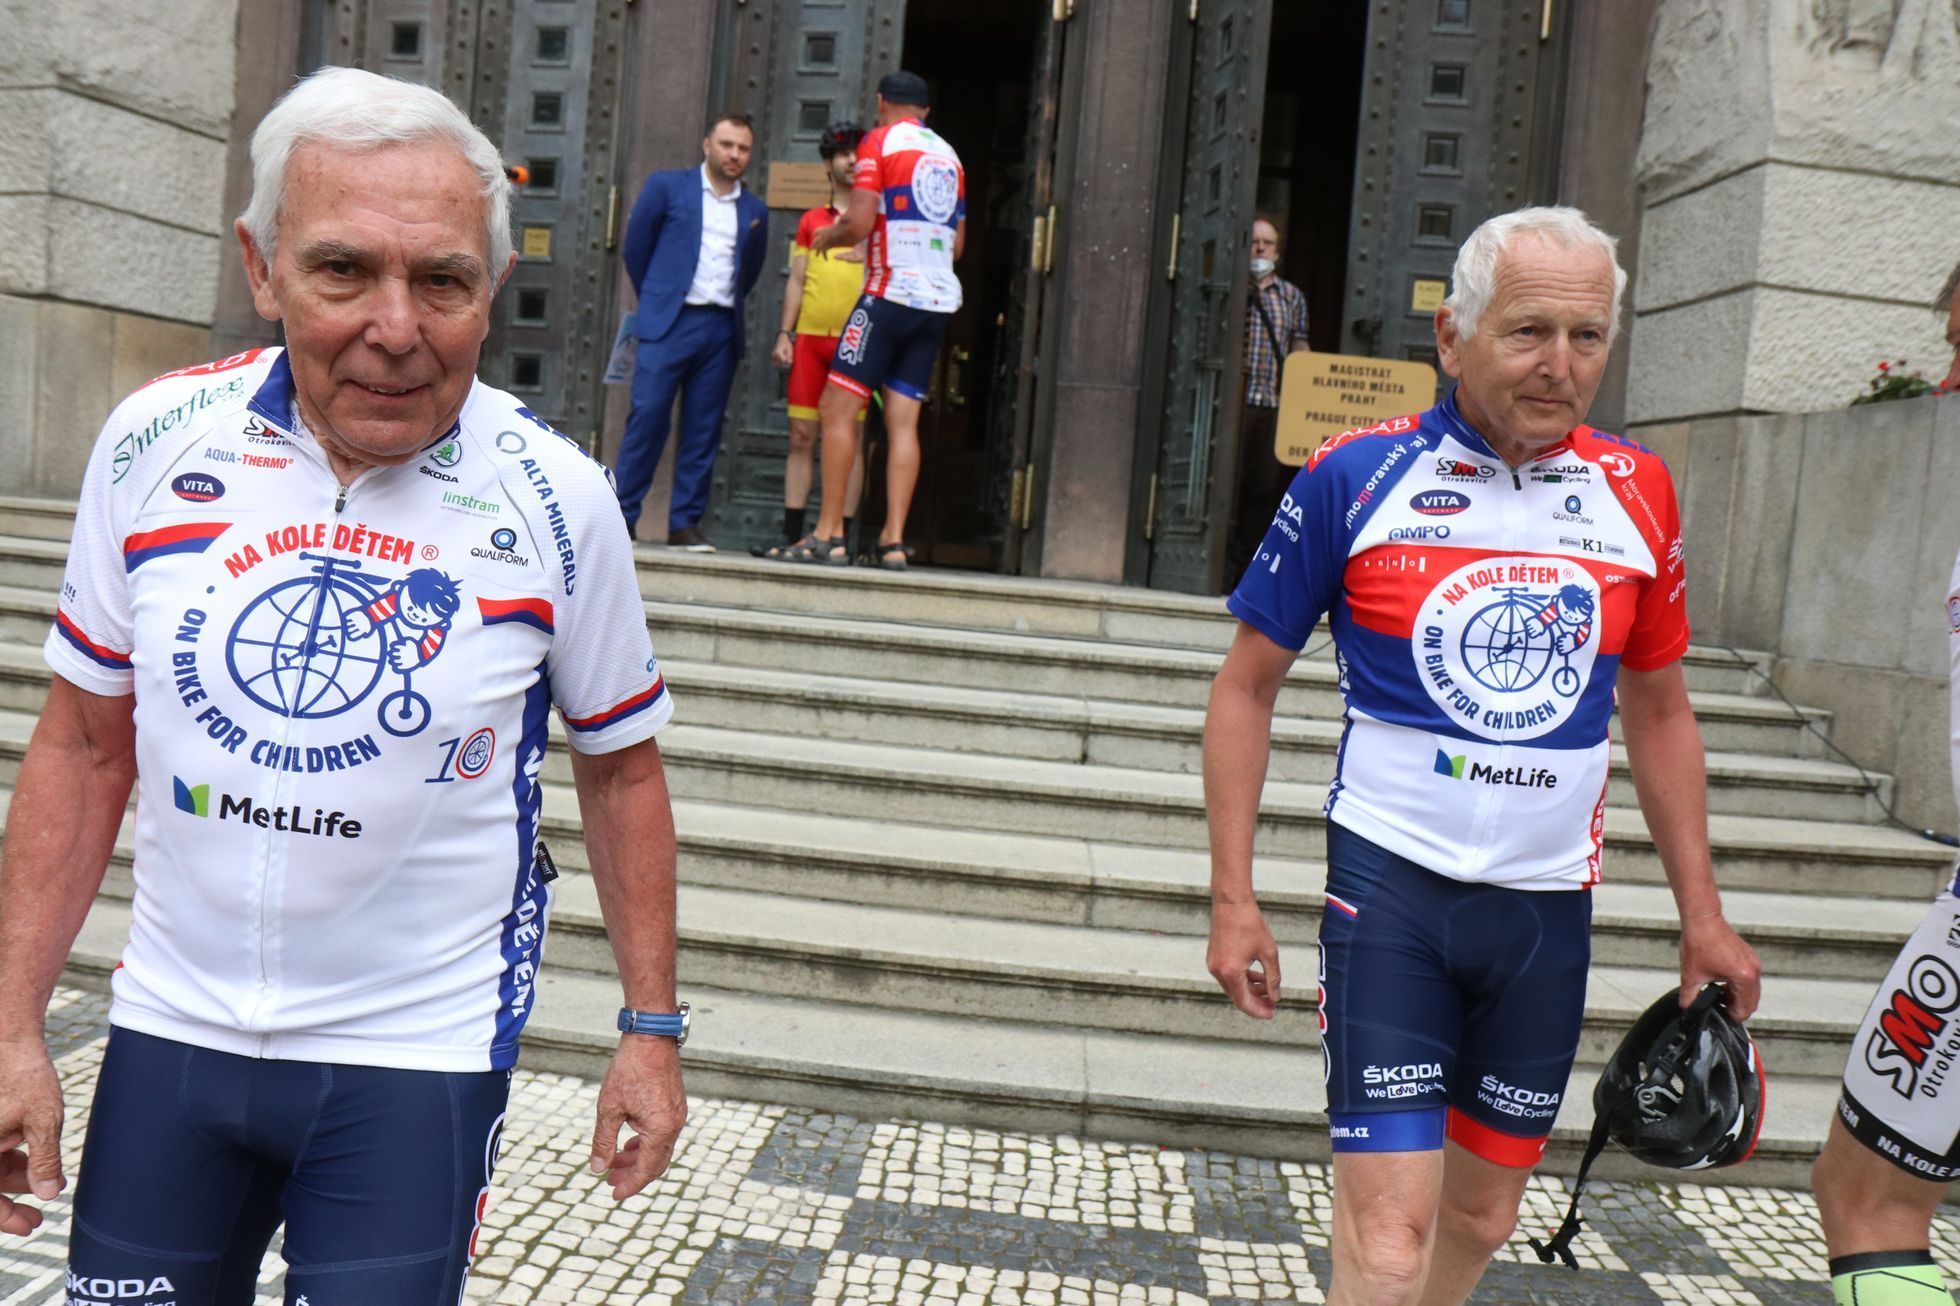 Lékaři Pavel Pafko (vlevo) a Jan Pirk během dobročinné cyklotour Na kole dětem.